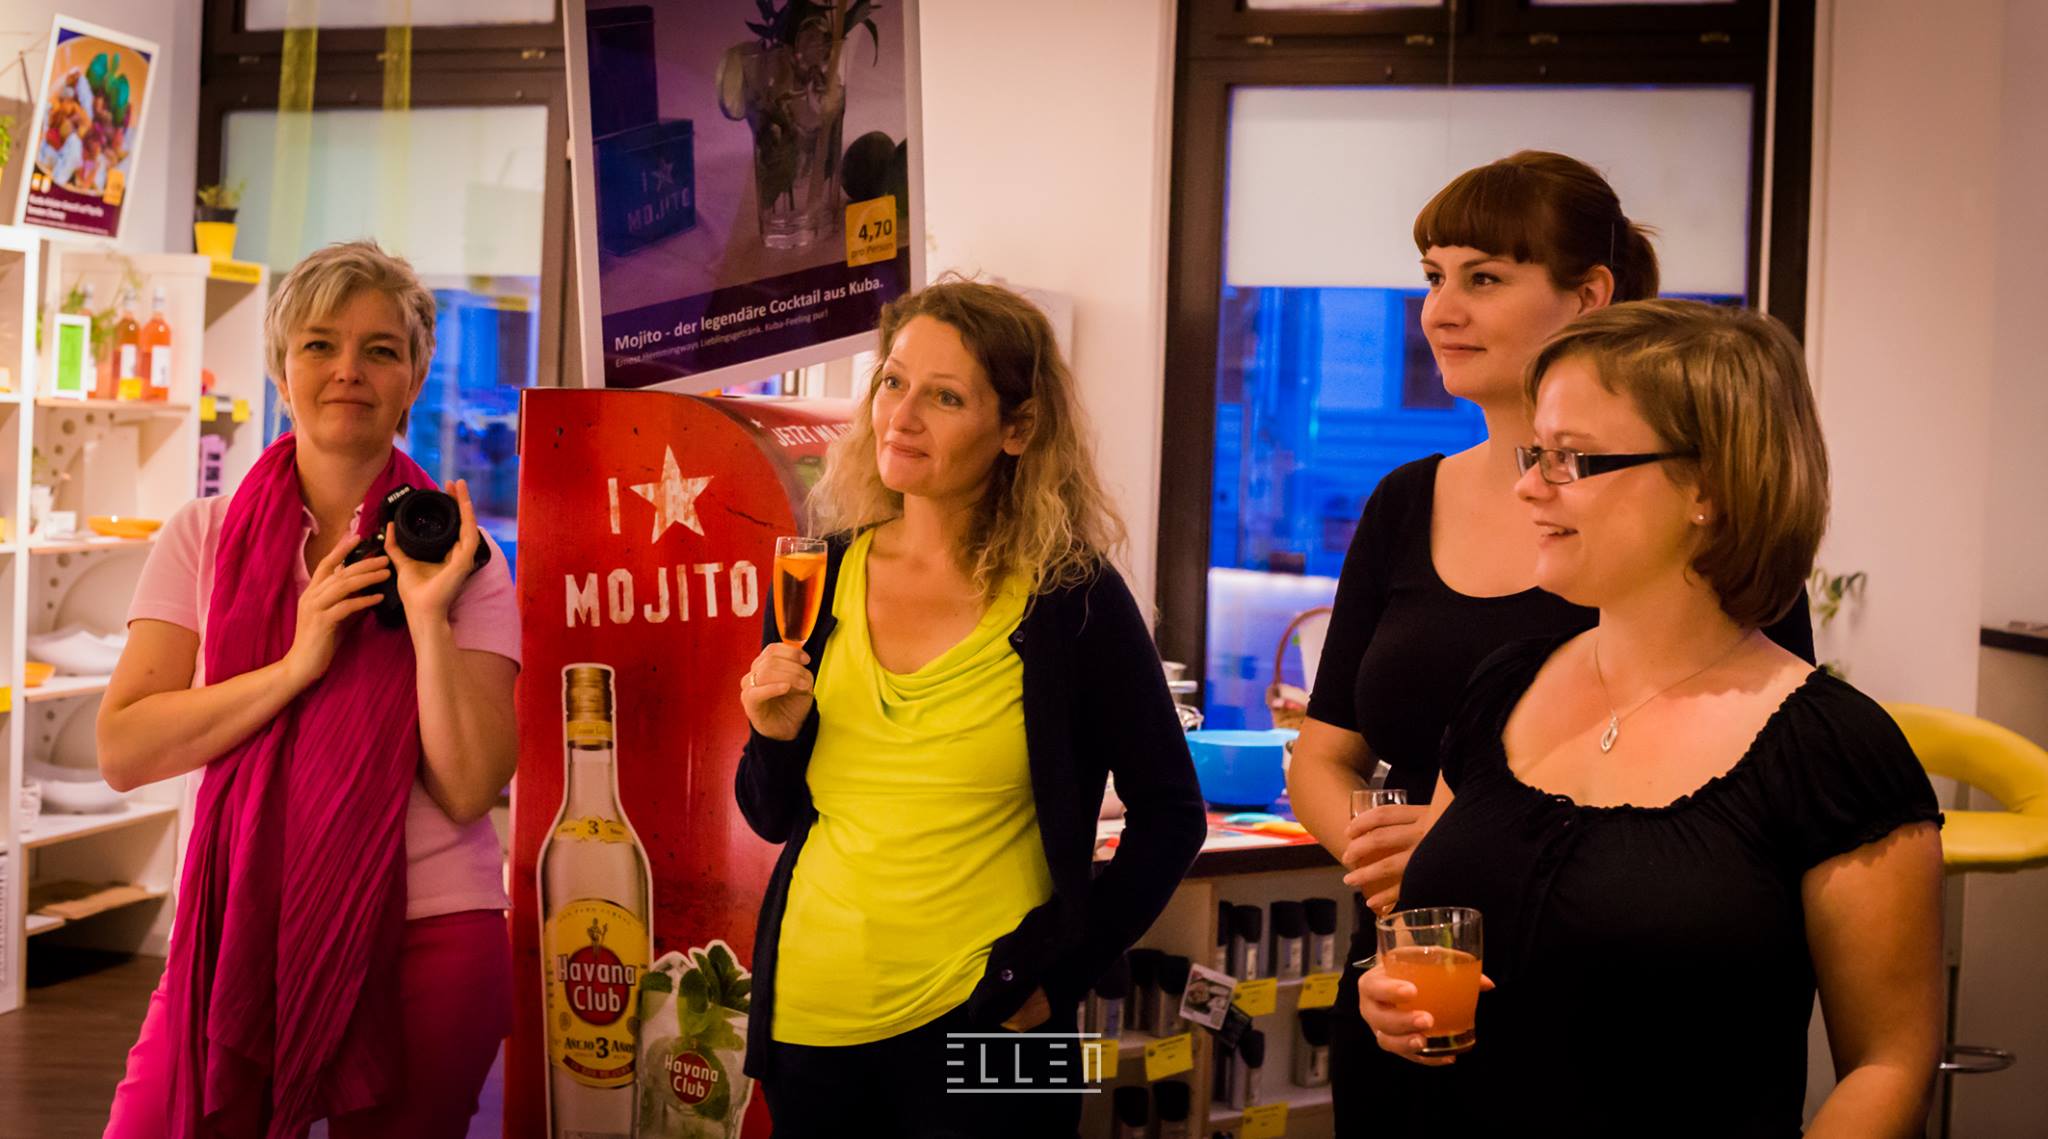 Netzwerken und Livemarketing als nachhaltiges Event. KonzeptFuchs organisiert seit dem Sommer 2015 regelmäßig Veranstaltungen für Dresdner Unternehmerinnen.